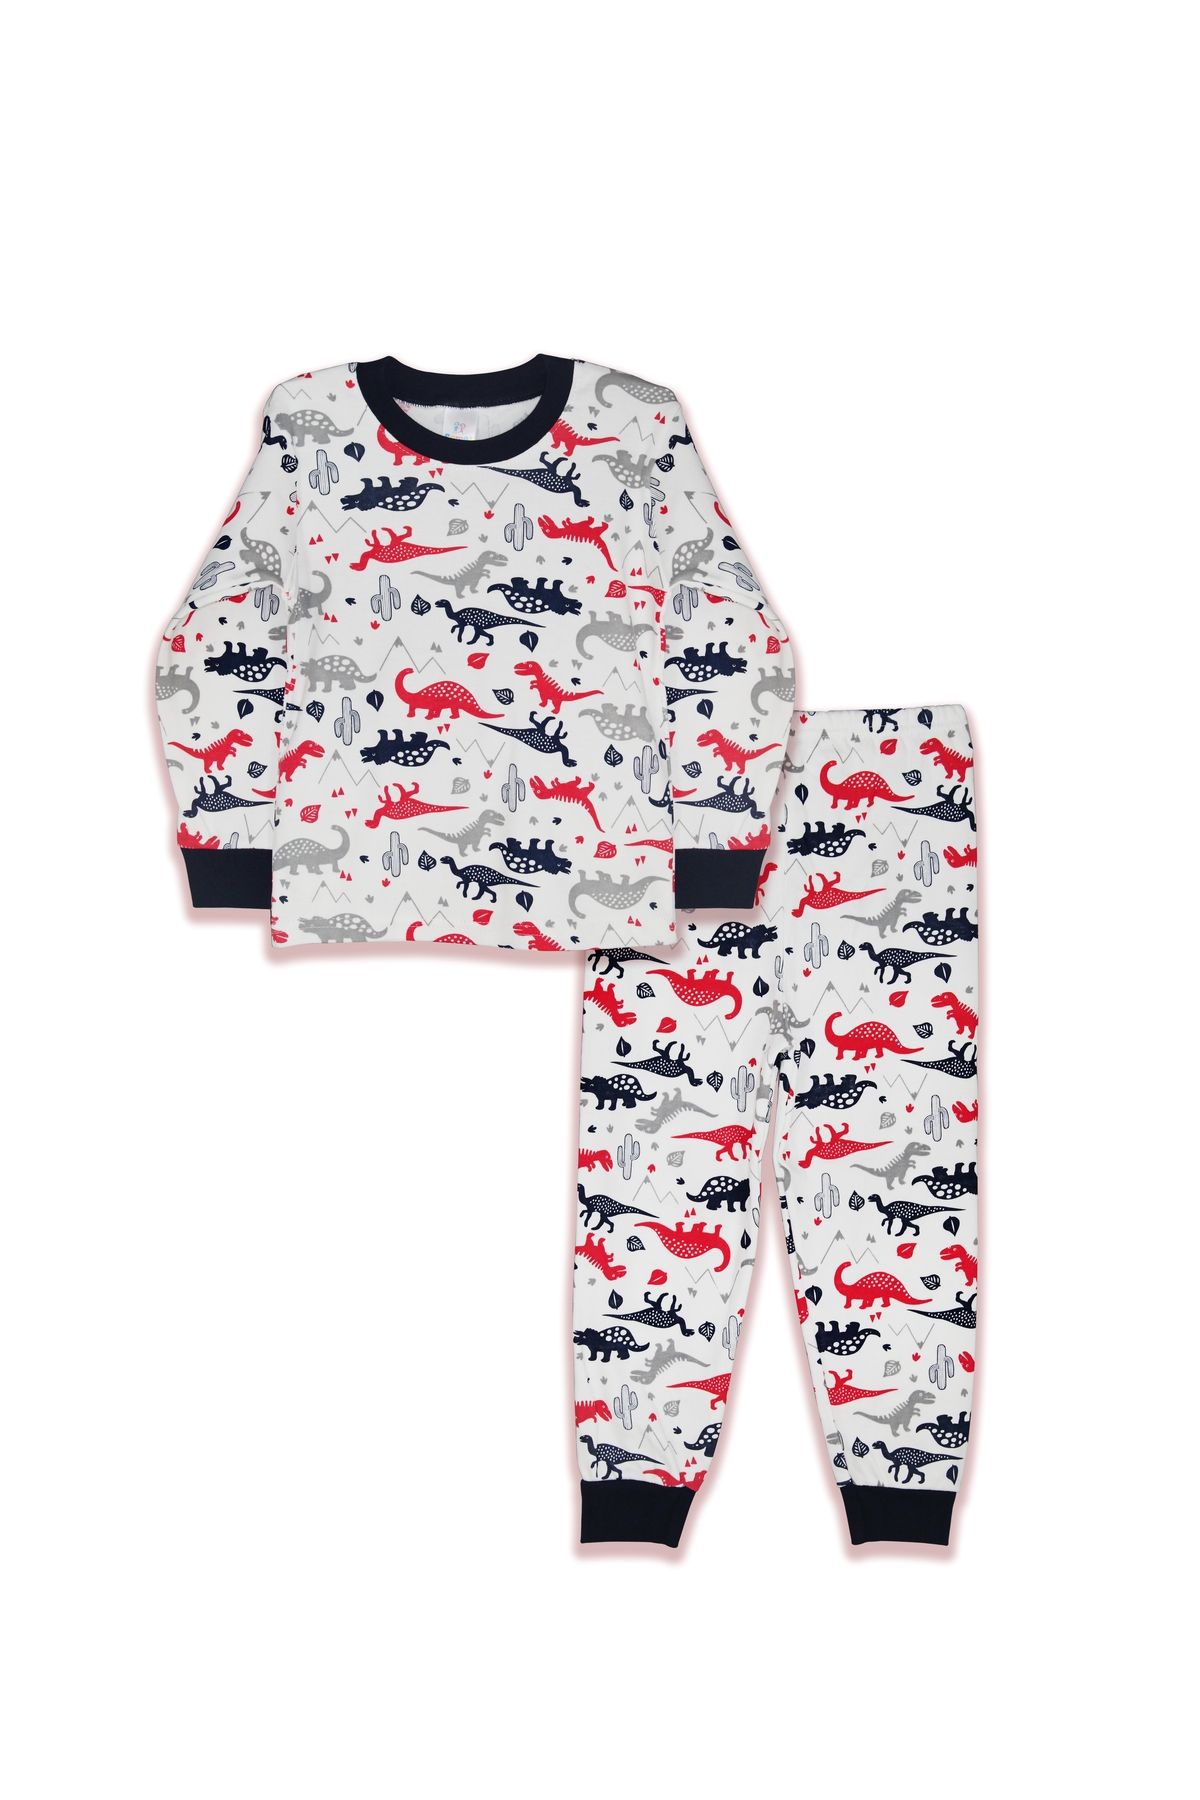 Samet Kids Club Dinozor Desenli Pamuklu Çocuk Pijama Takımı